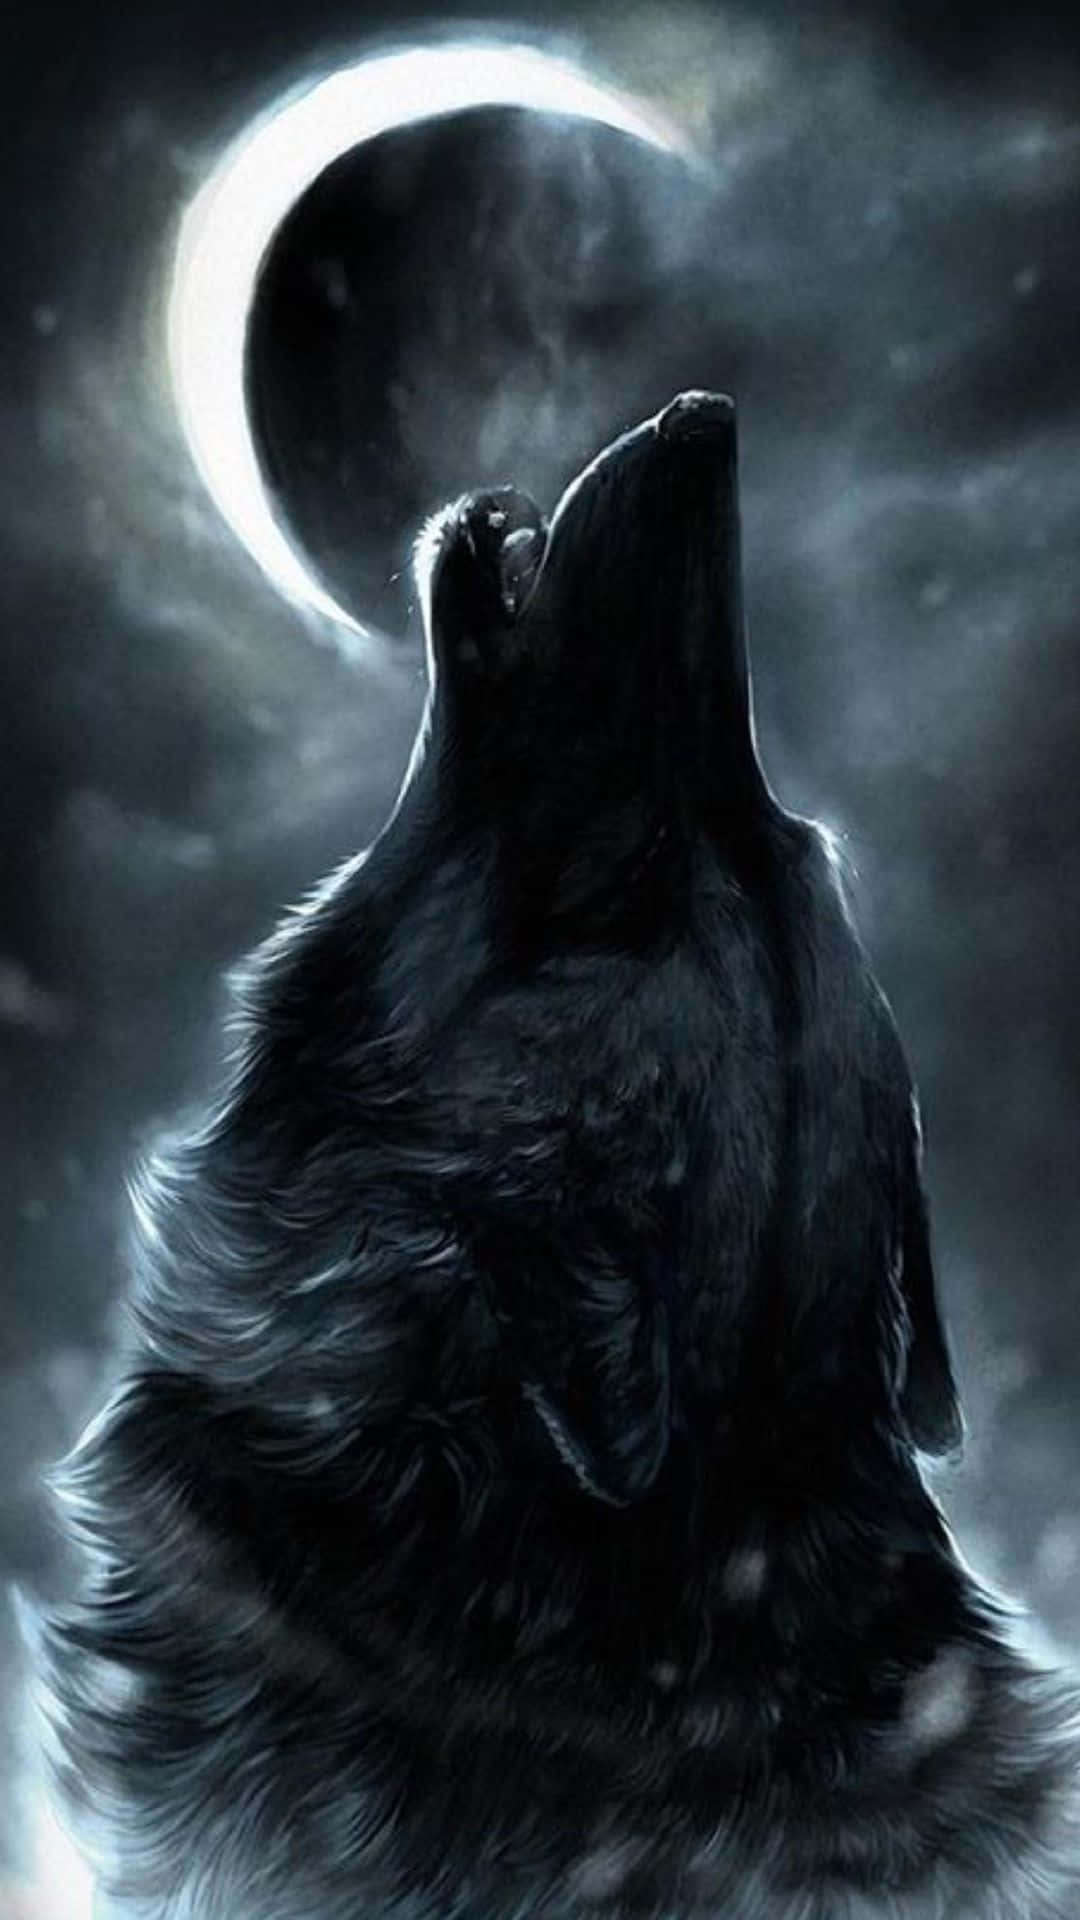 howling wolf wallpaper hd